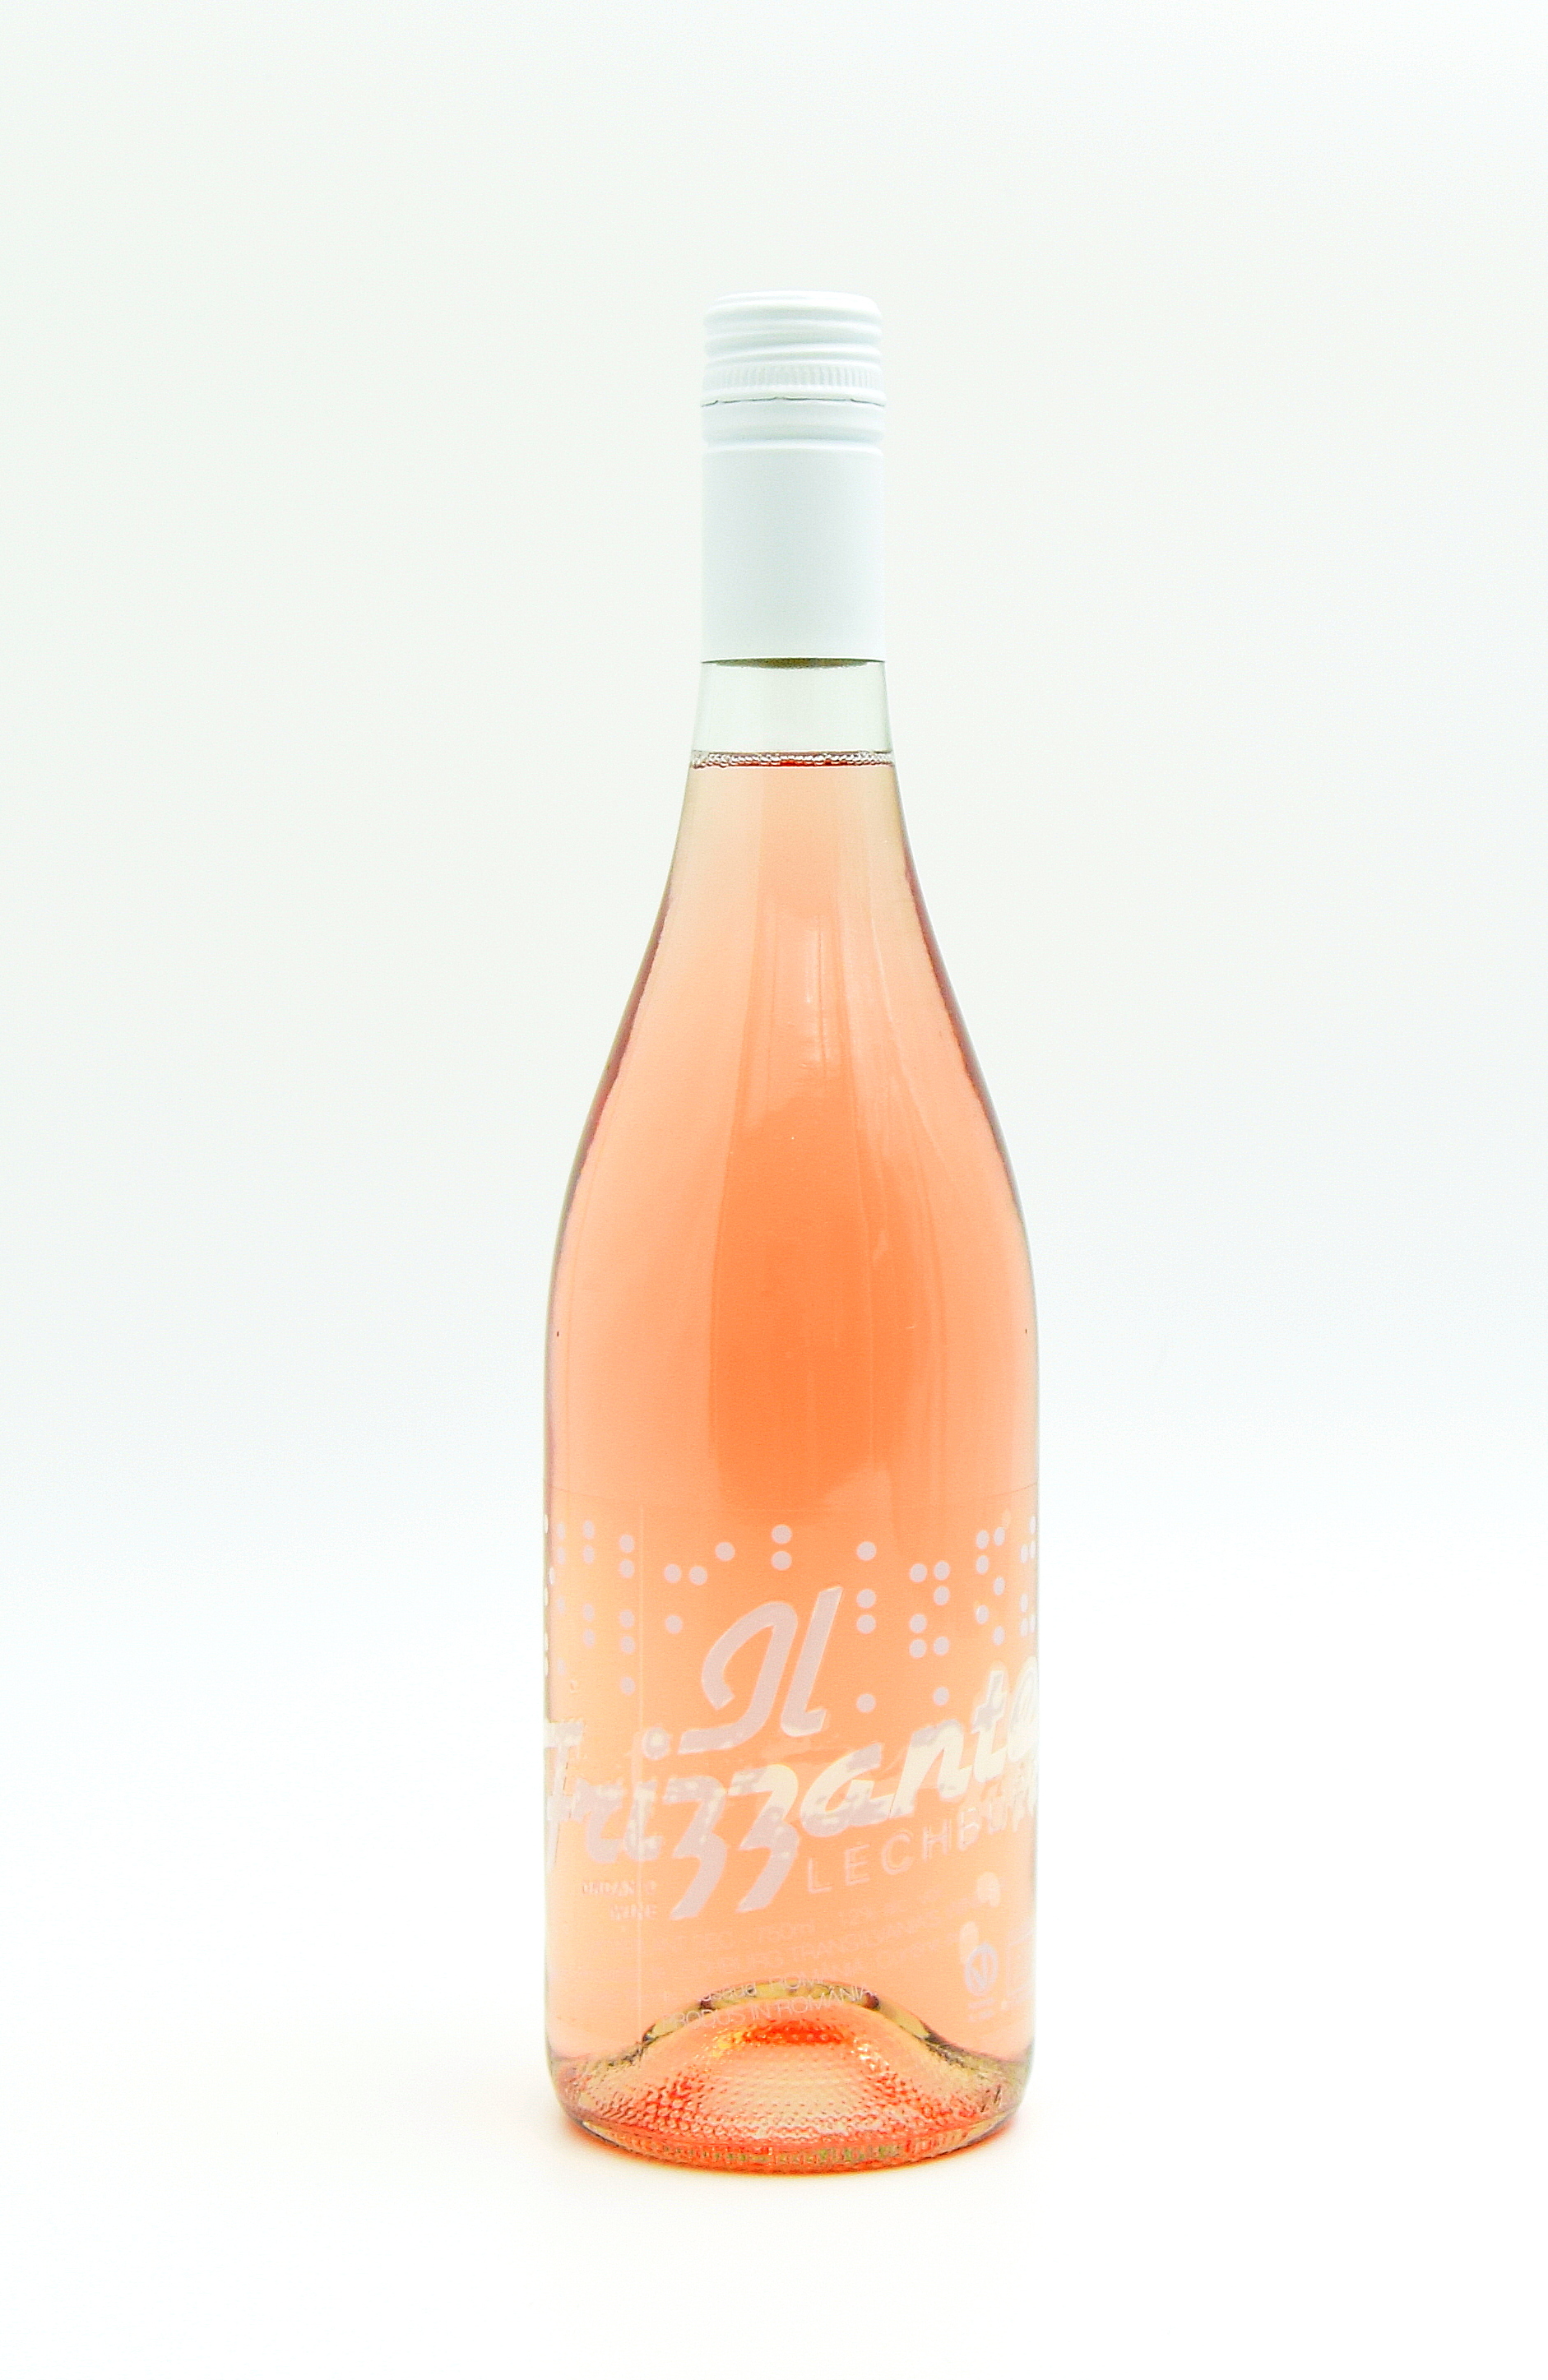 Vin roze - Lechburg il frizzante, sec, 2019 | Lechburg